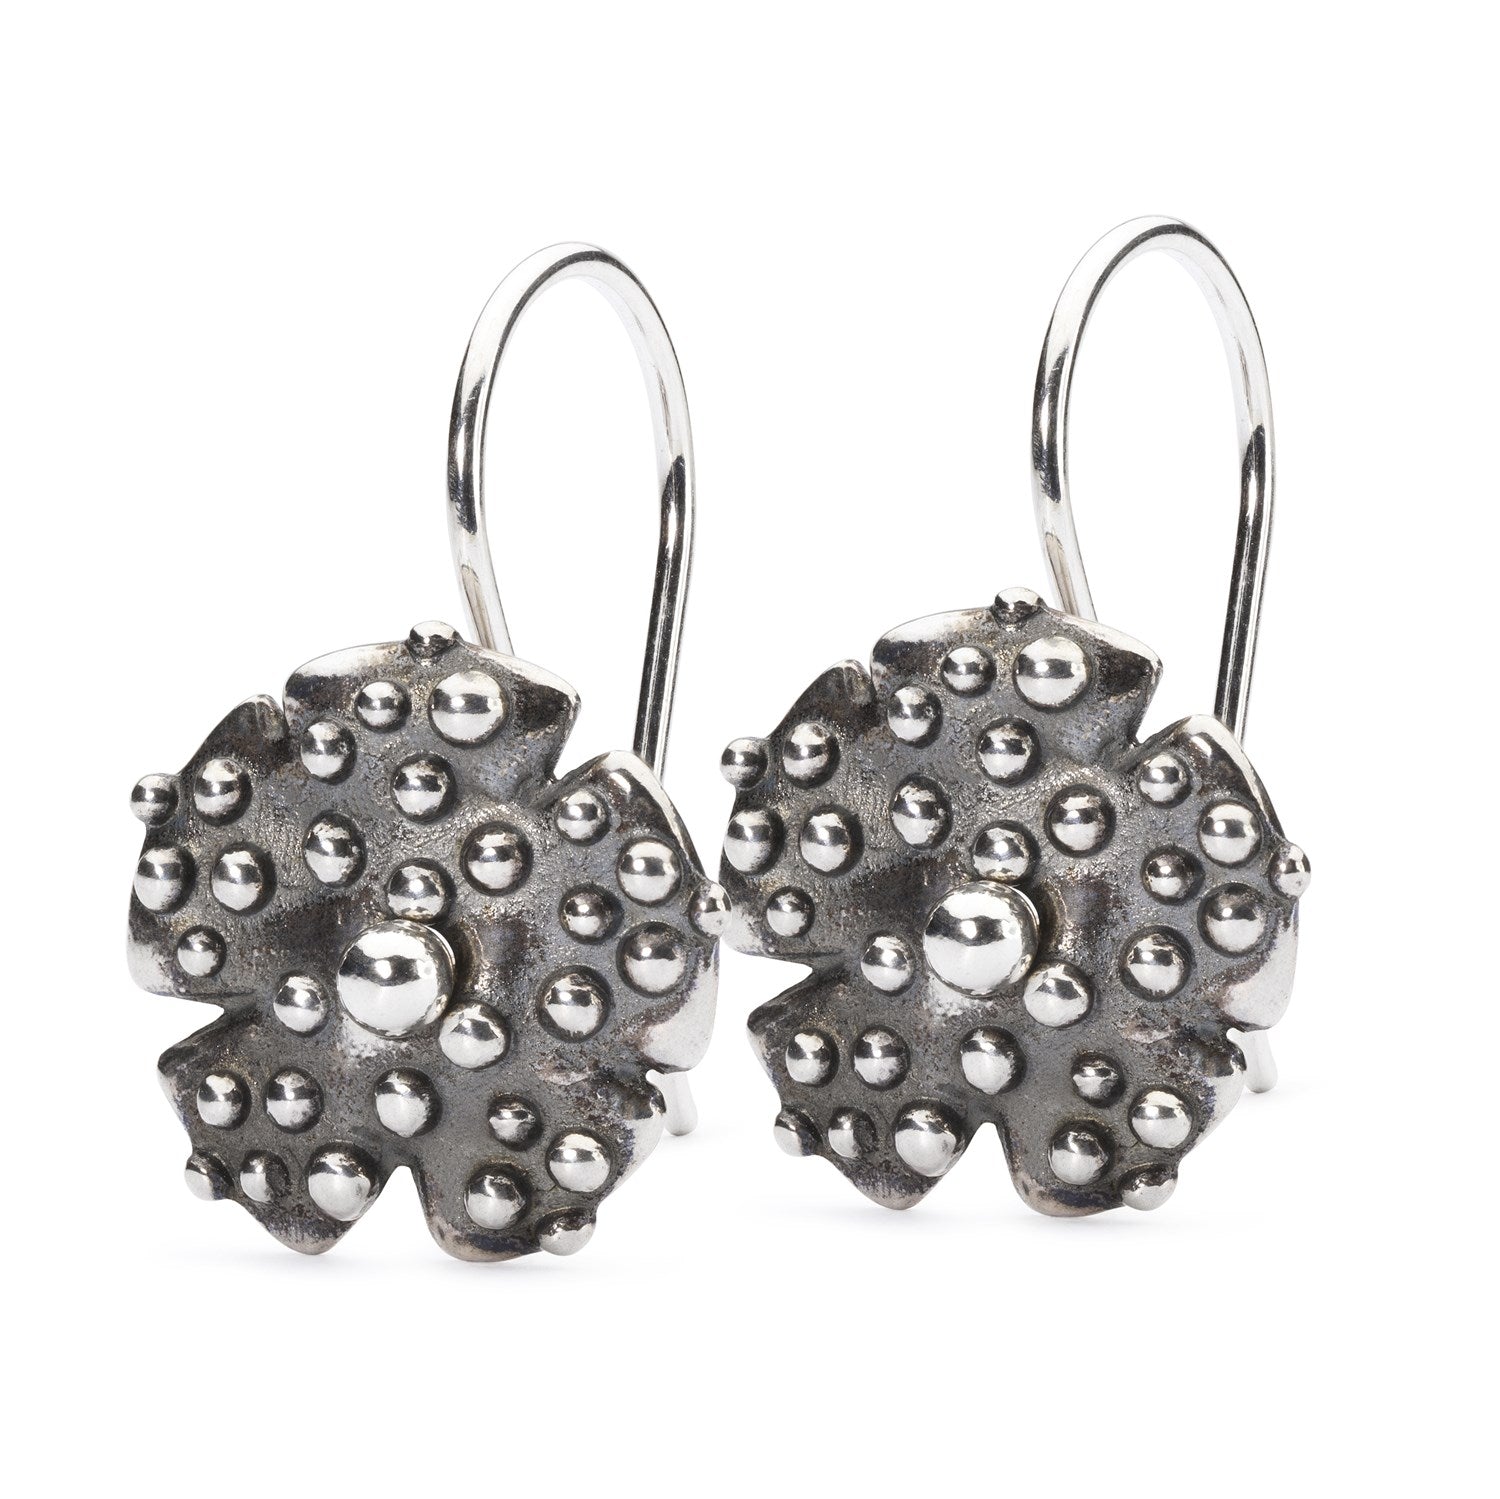 Troll Anemone Earrings with Silver Earring Hooks – Trollbeads A/S